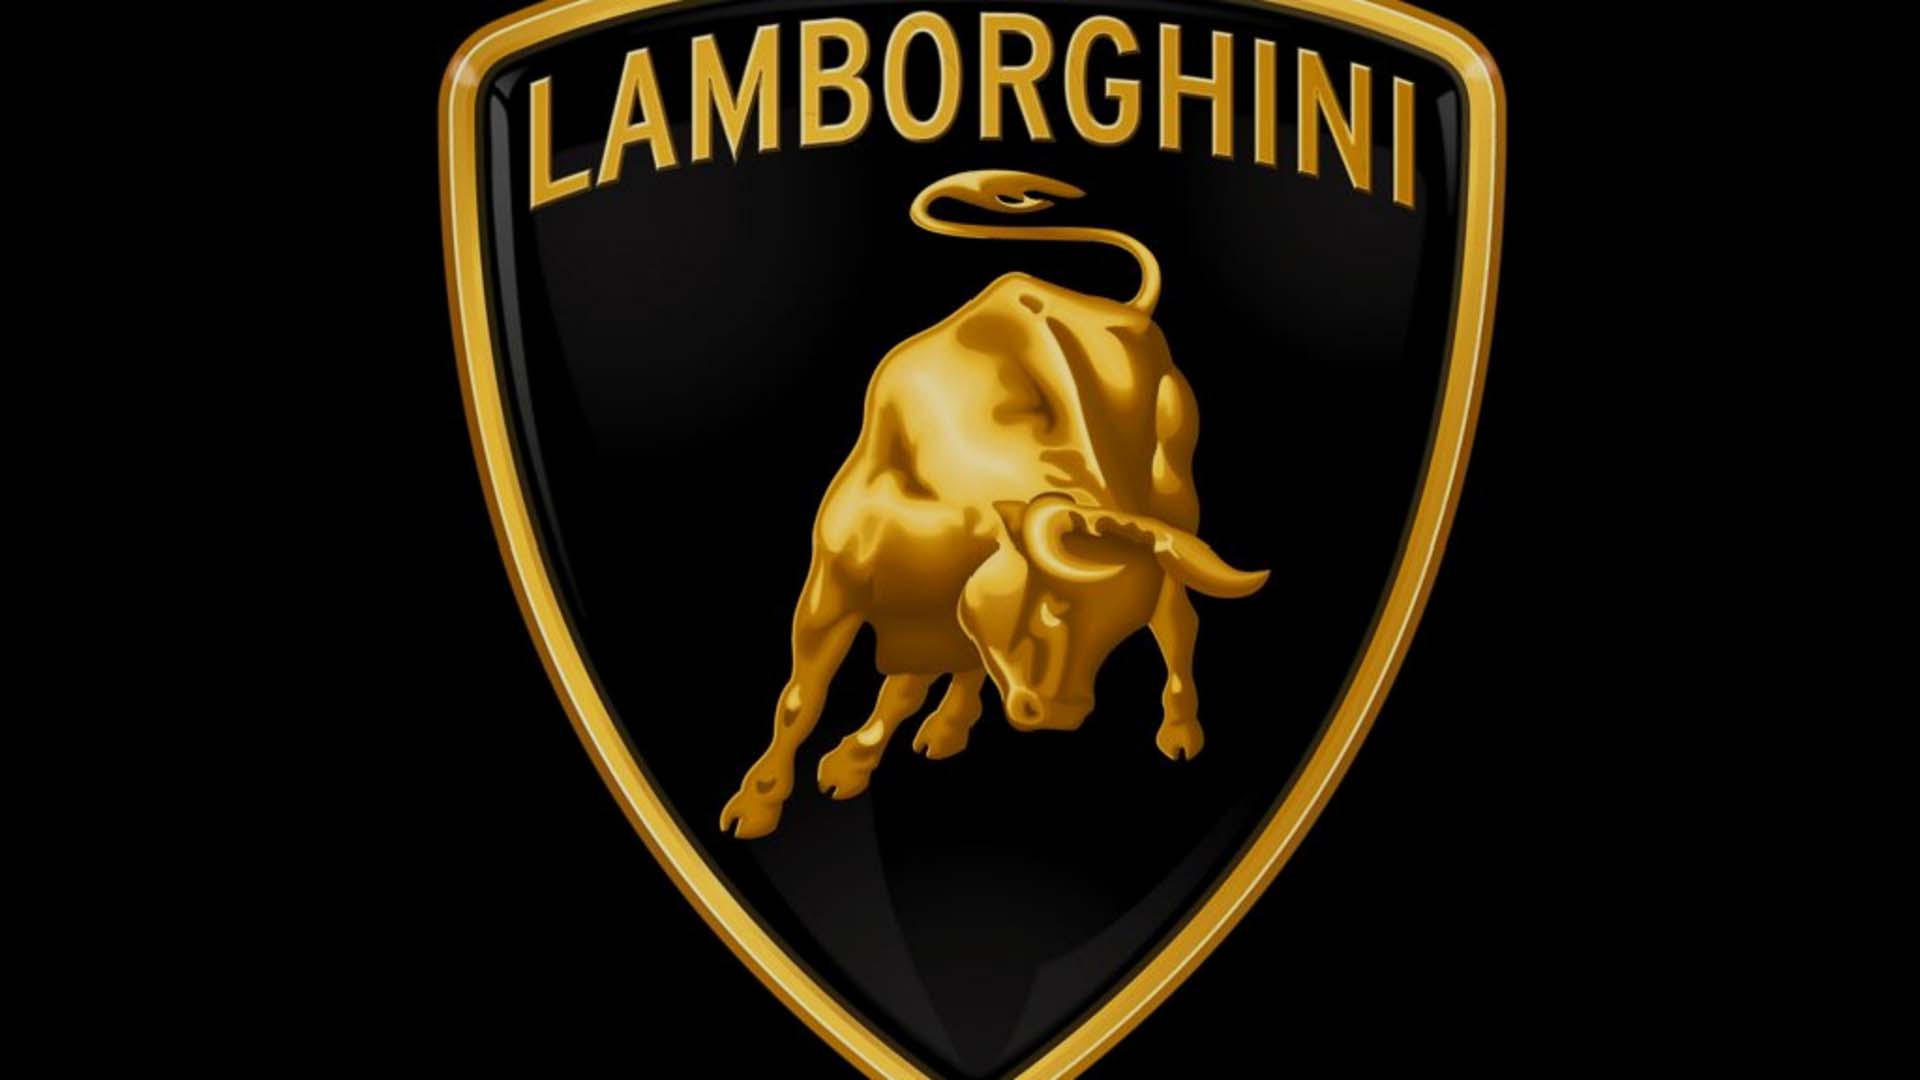 Free download Lamborghini Logo Wallpaper For iPhone image 350 ...